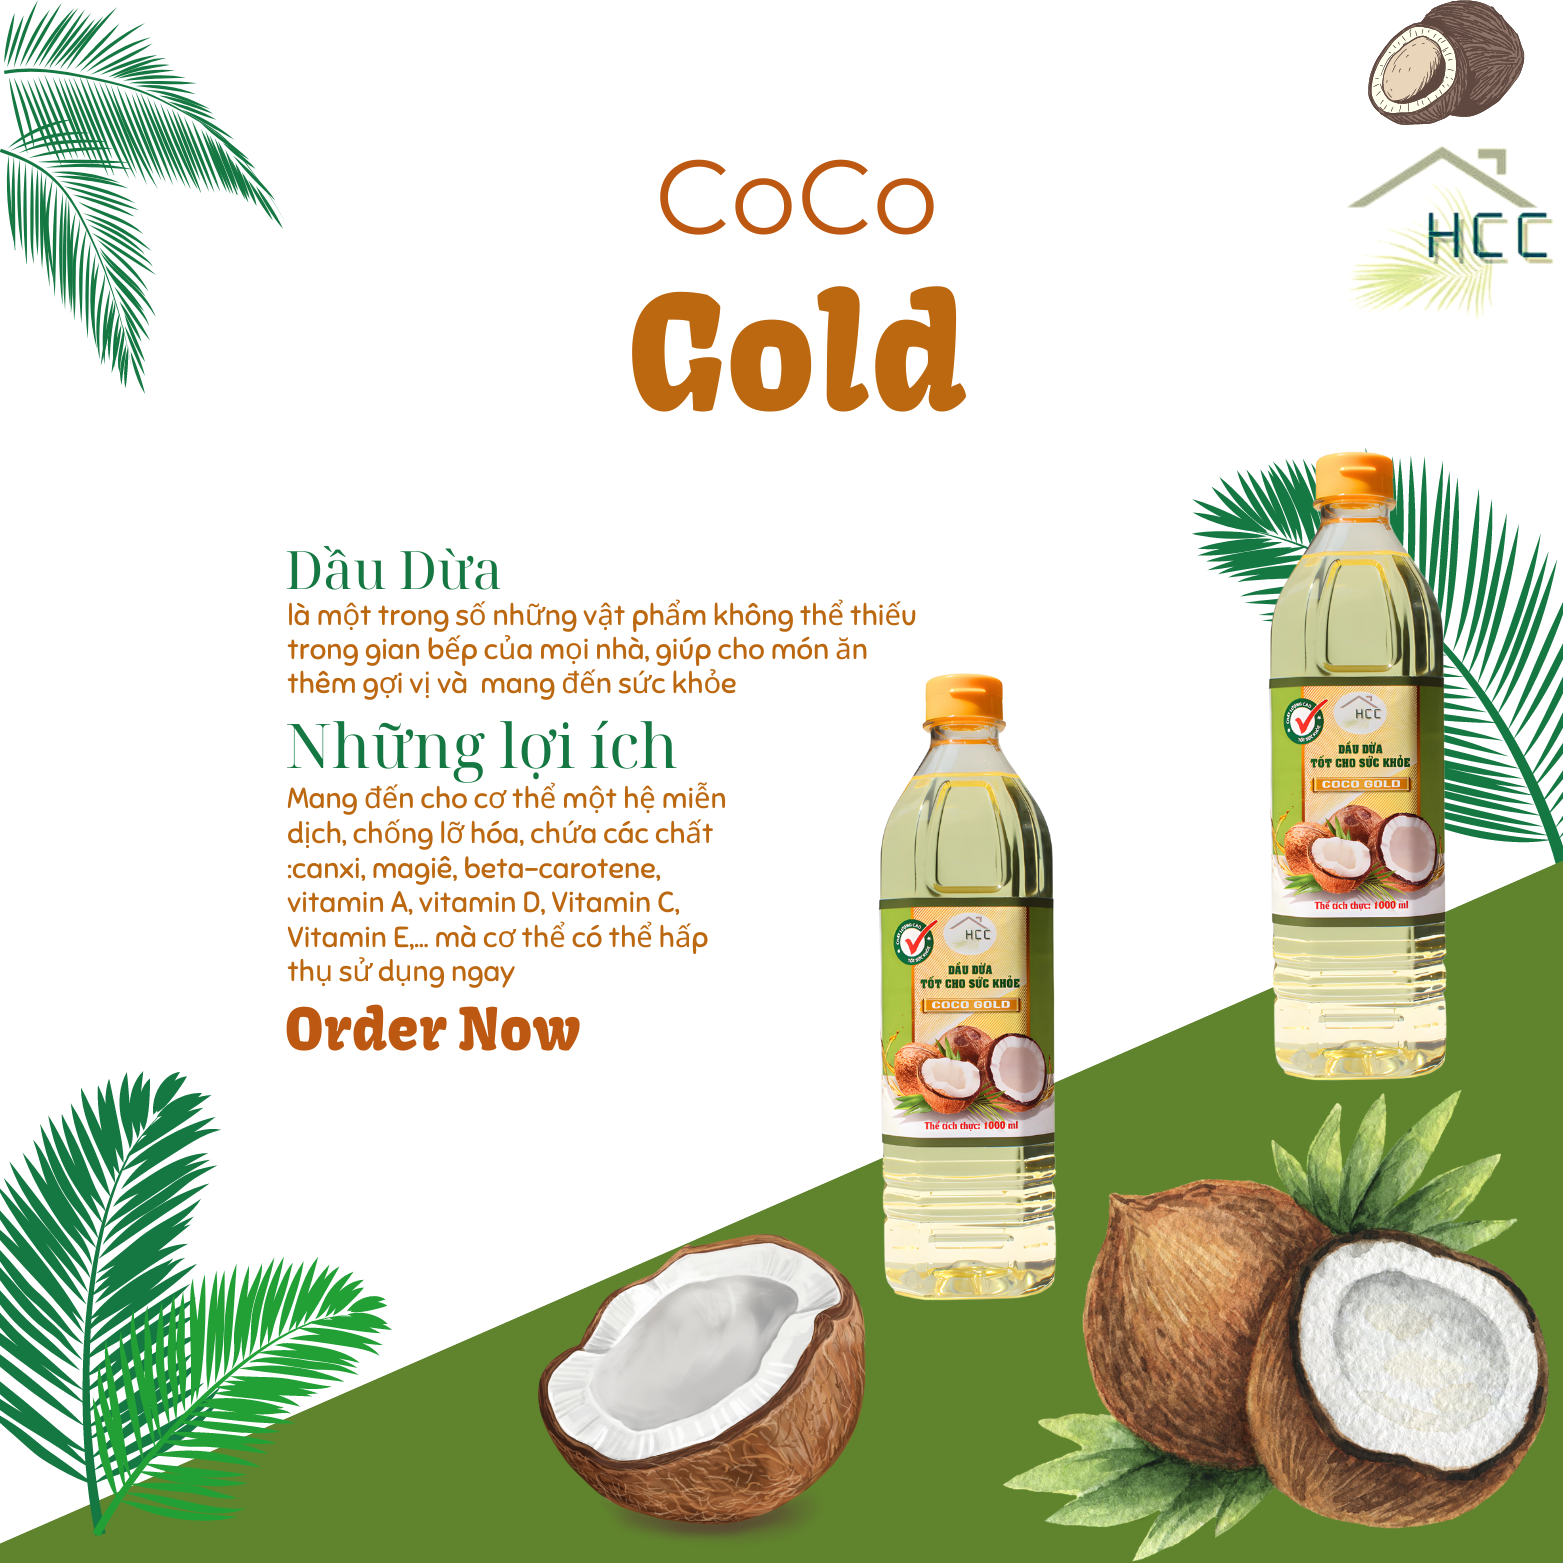 Dầu dừa nấu ăn Coco Gold 100% nguyên chất